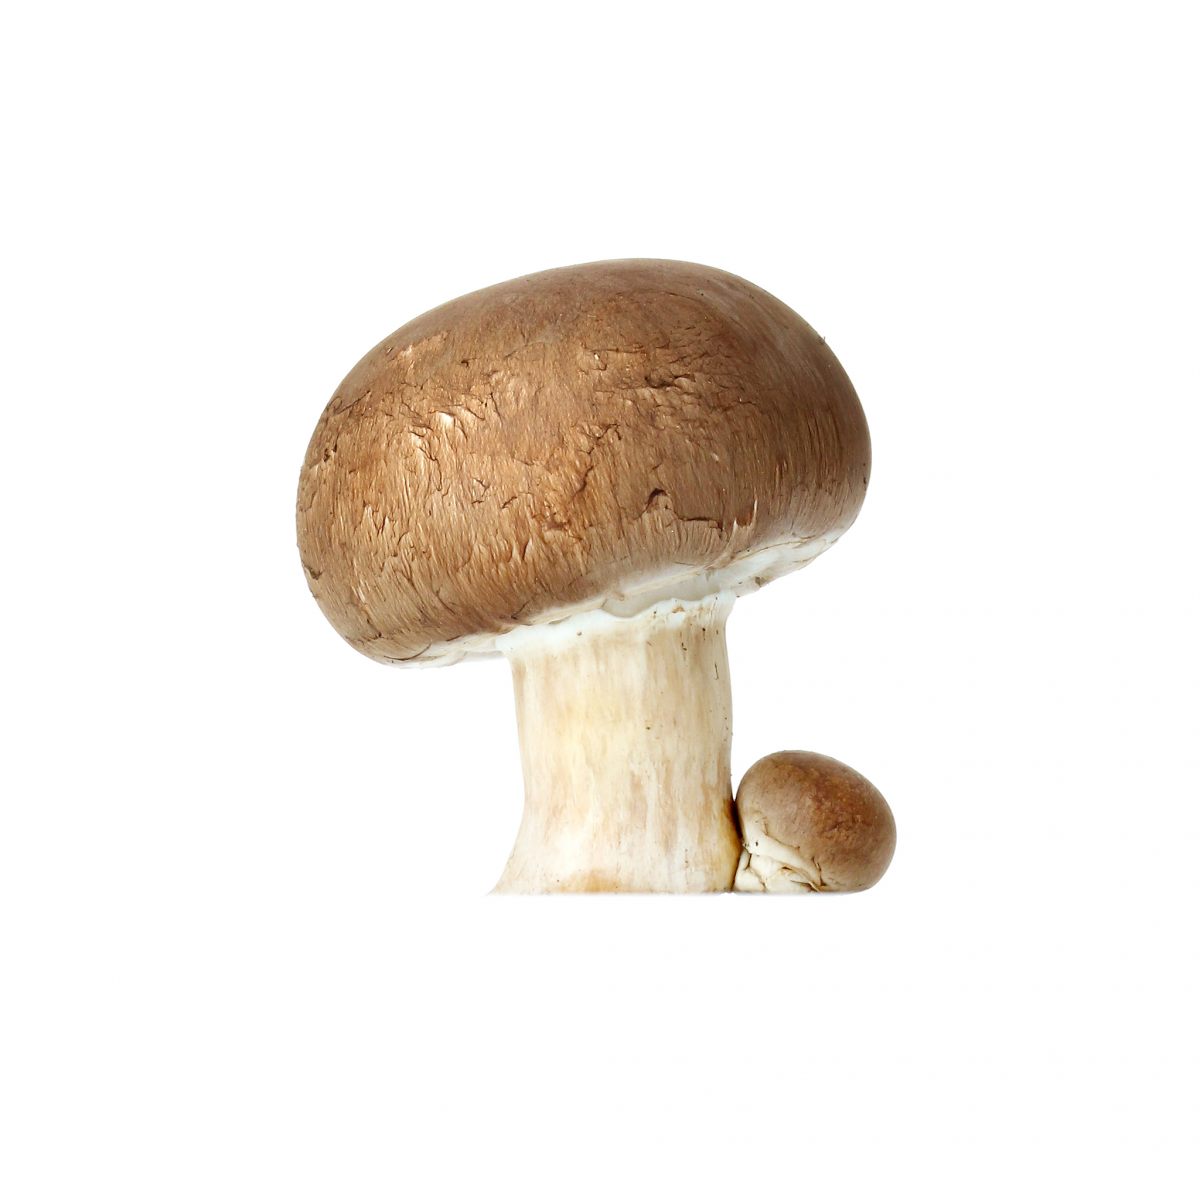 Méthode de culture des champignons de Paris (2) - champignons de Paris